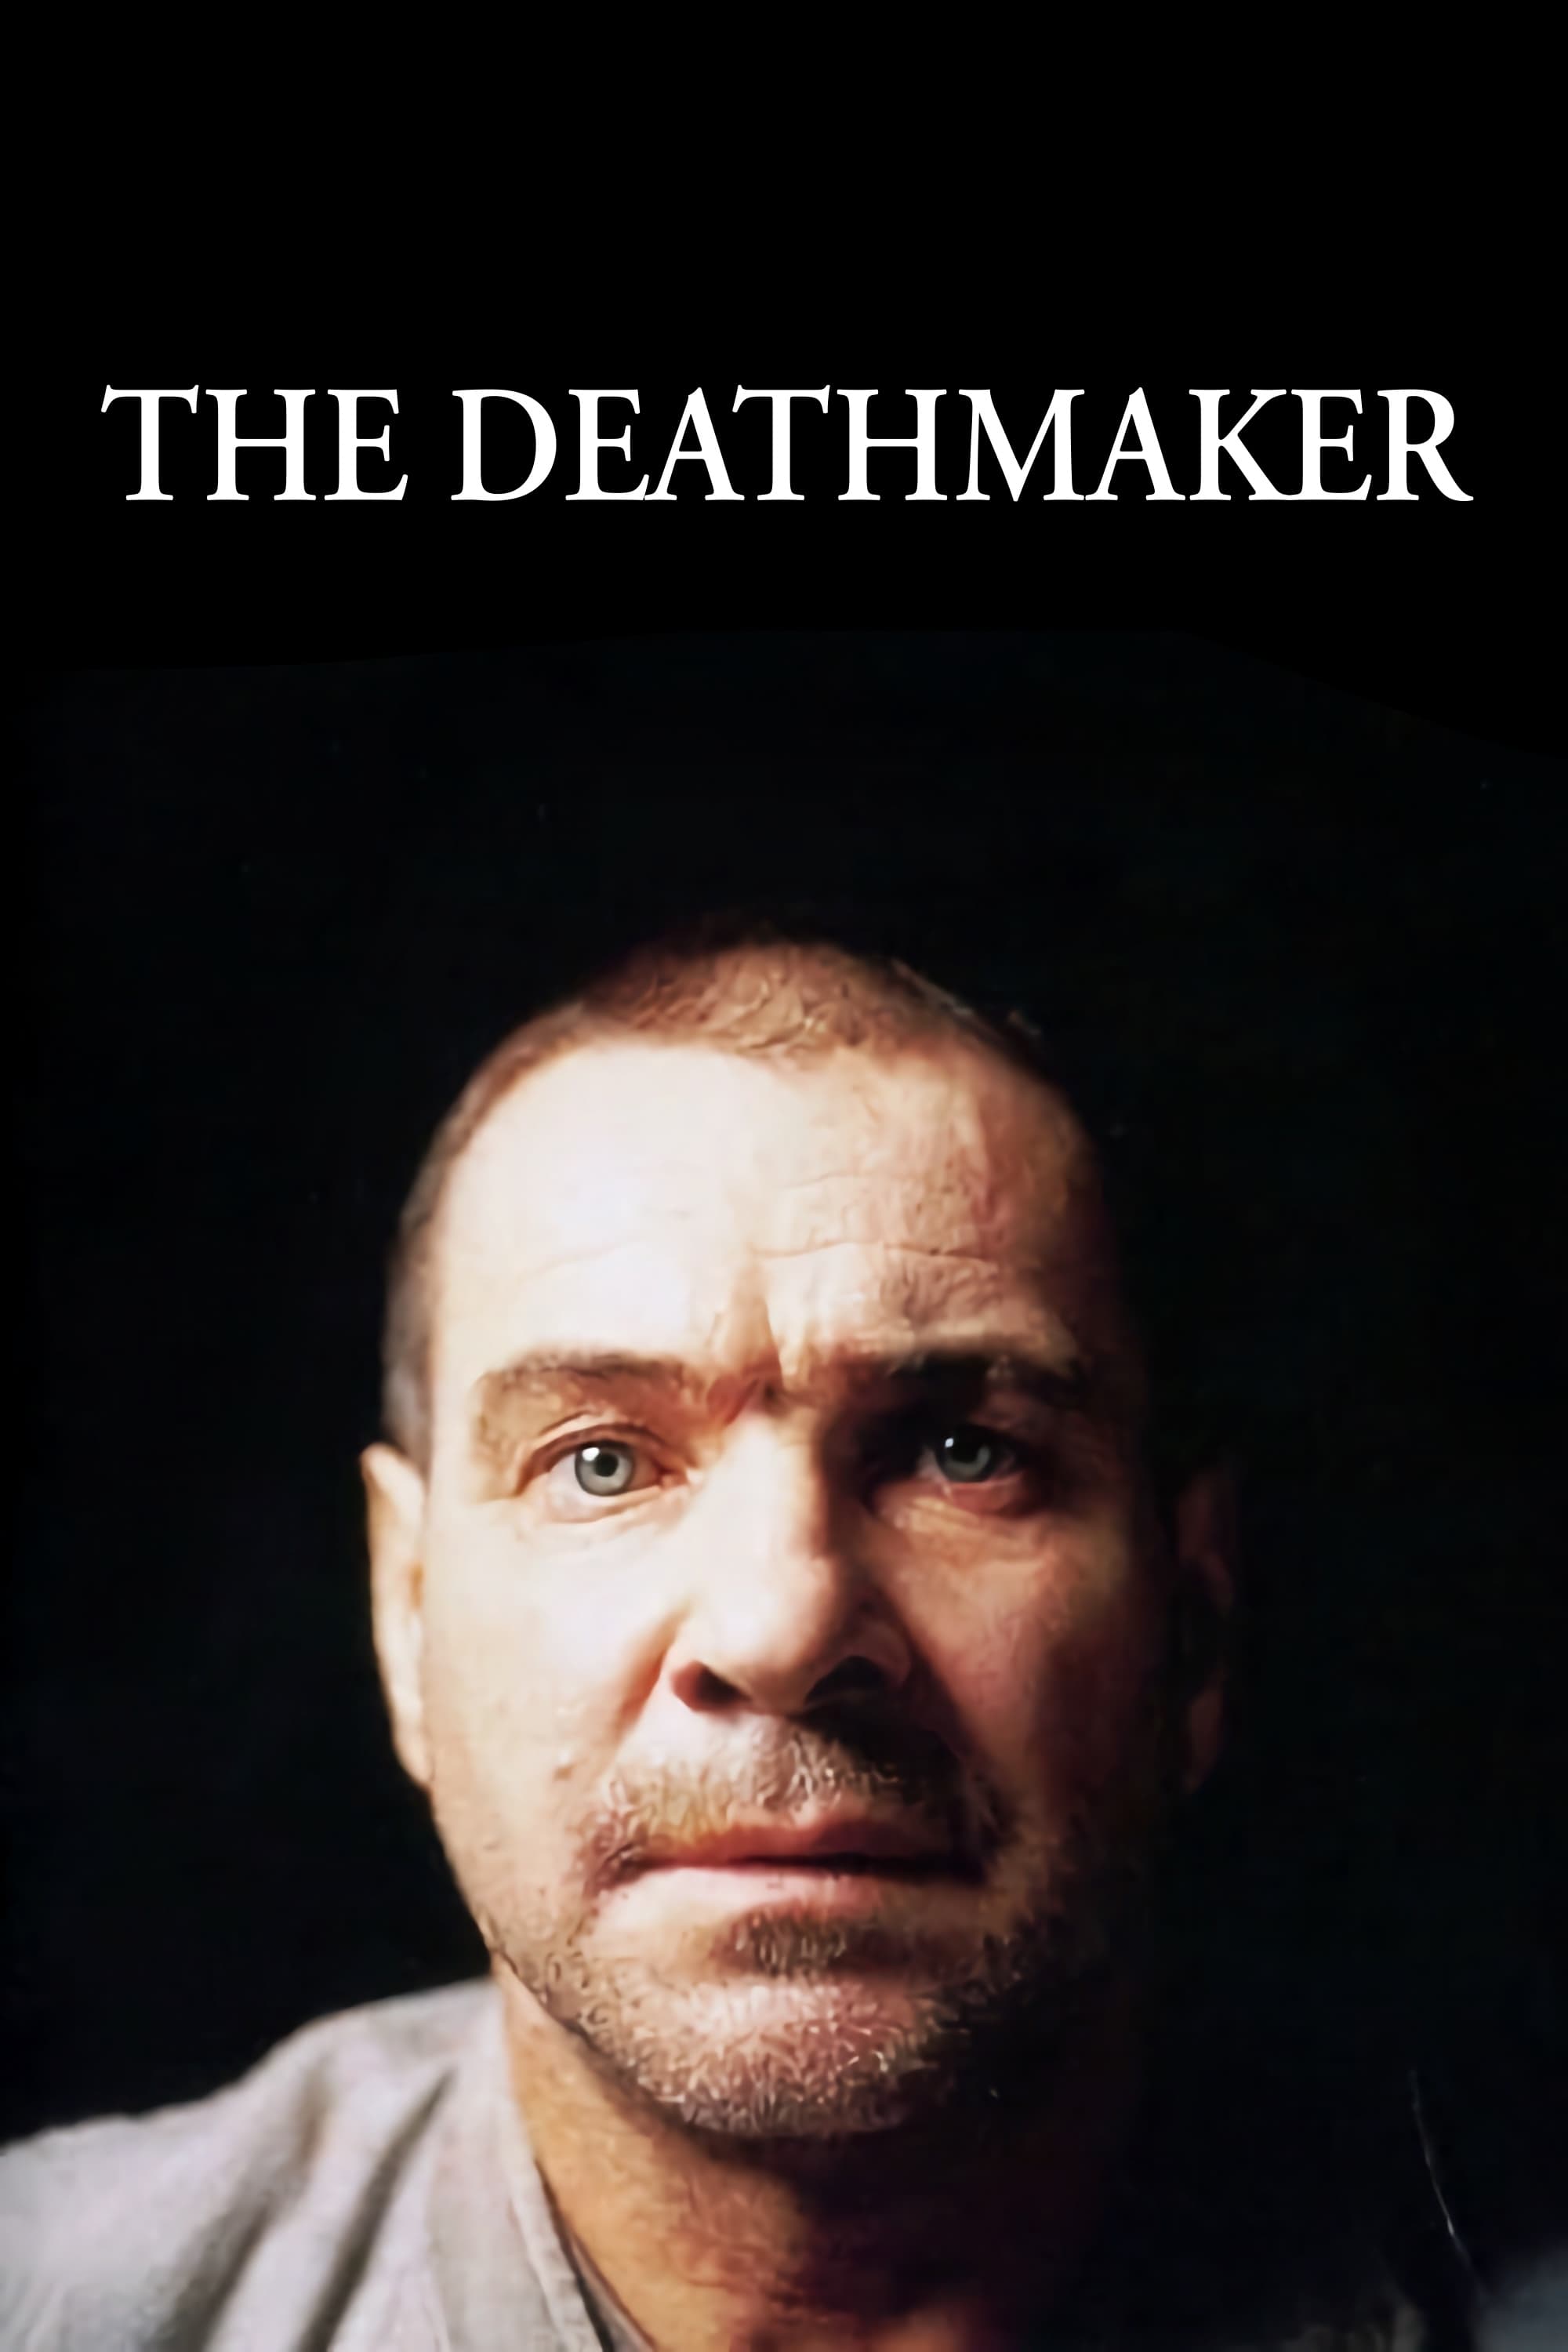 The Deathmaker